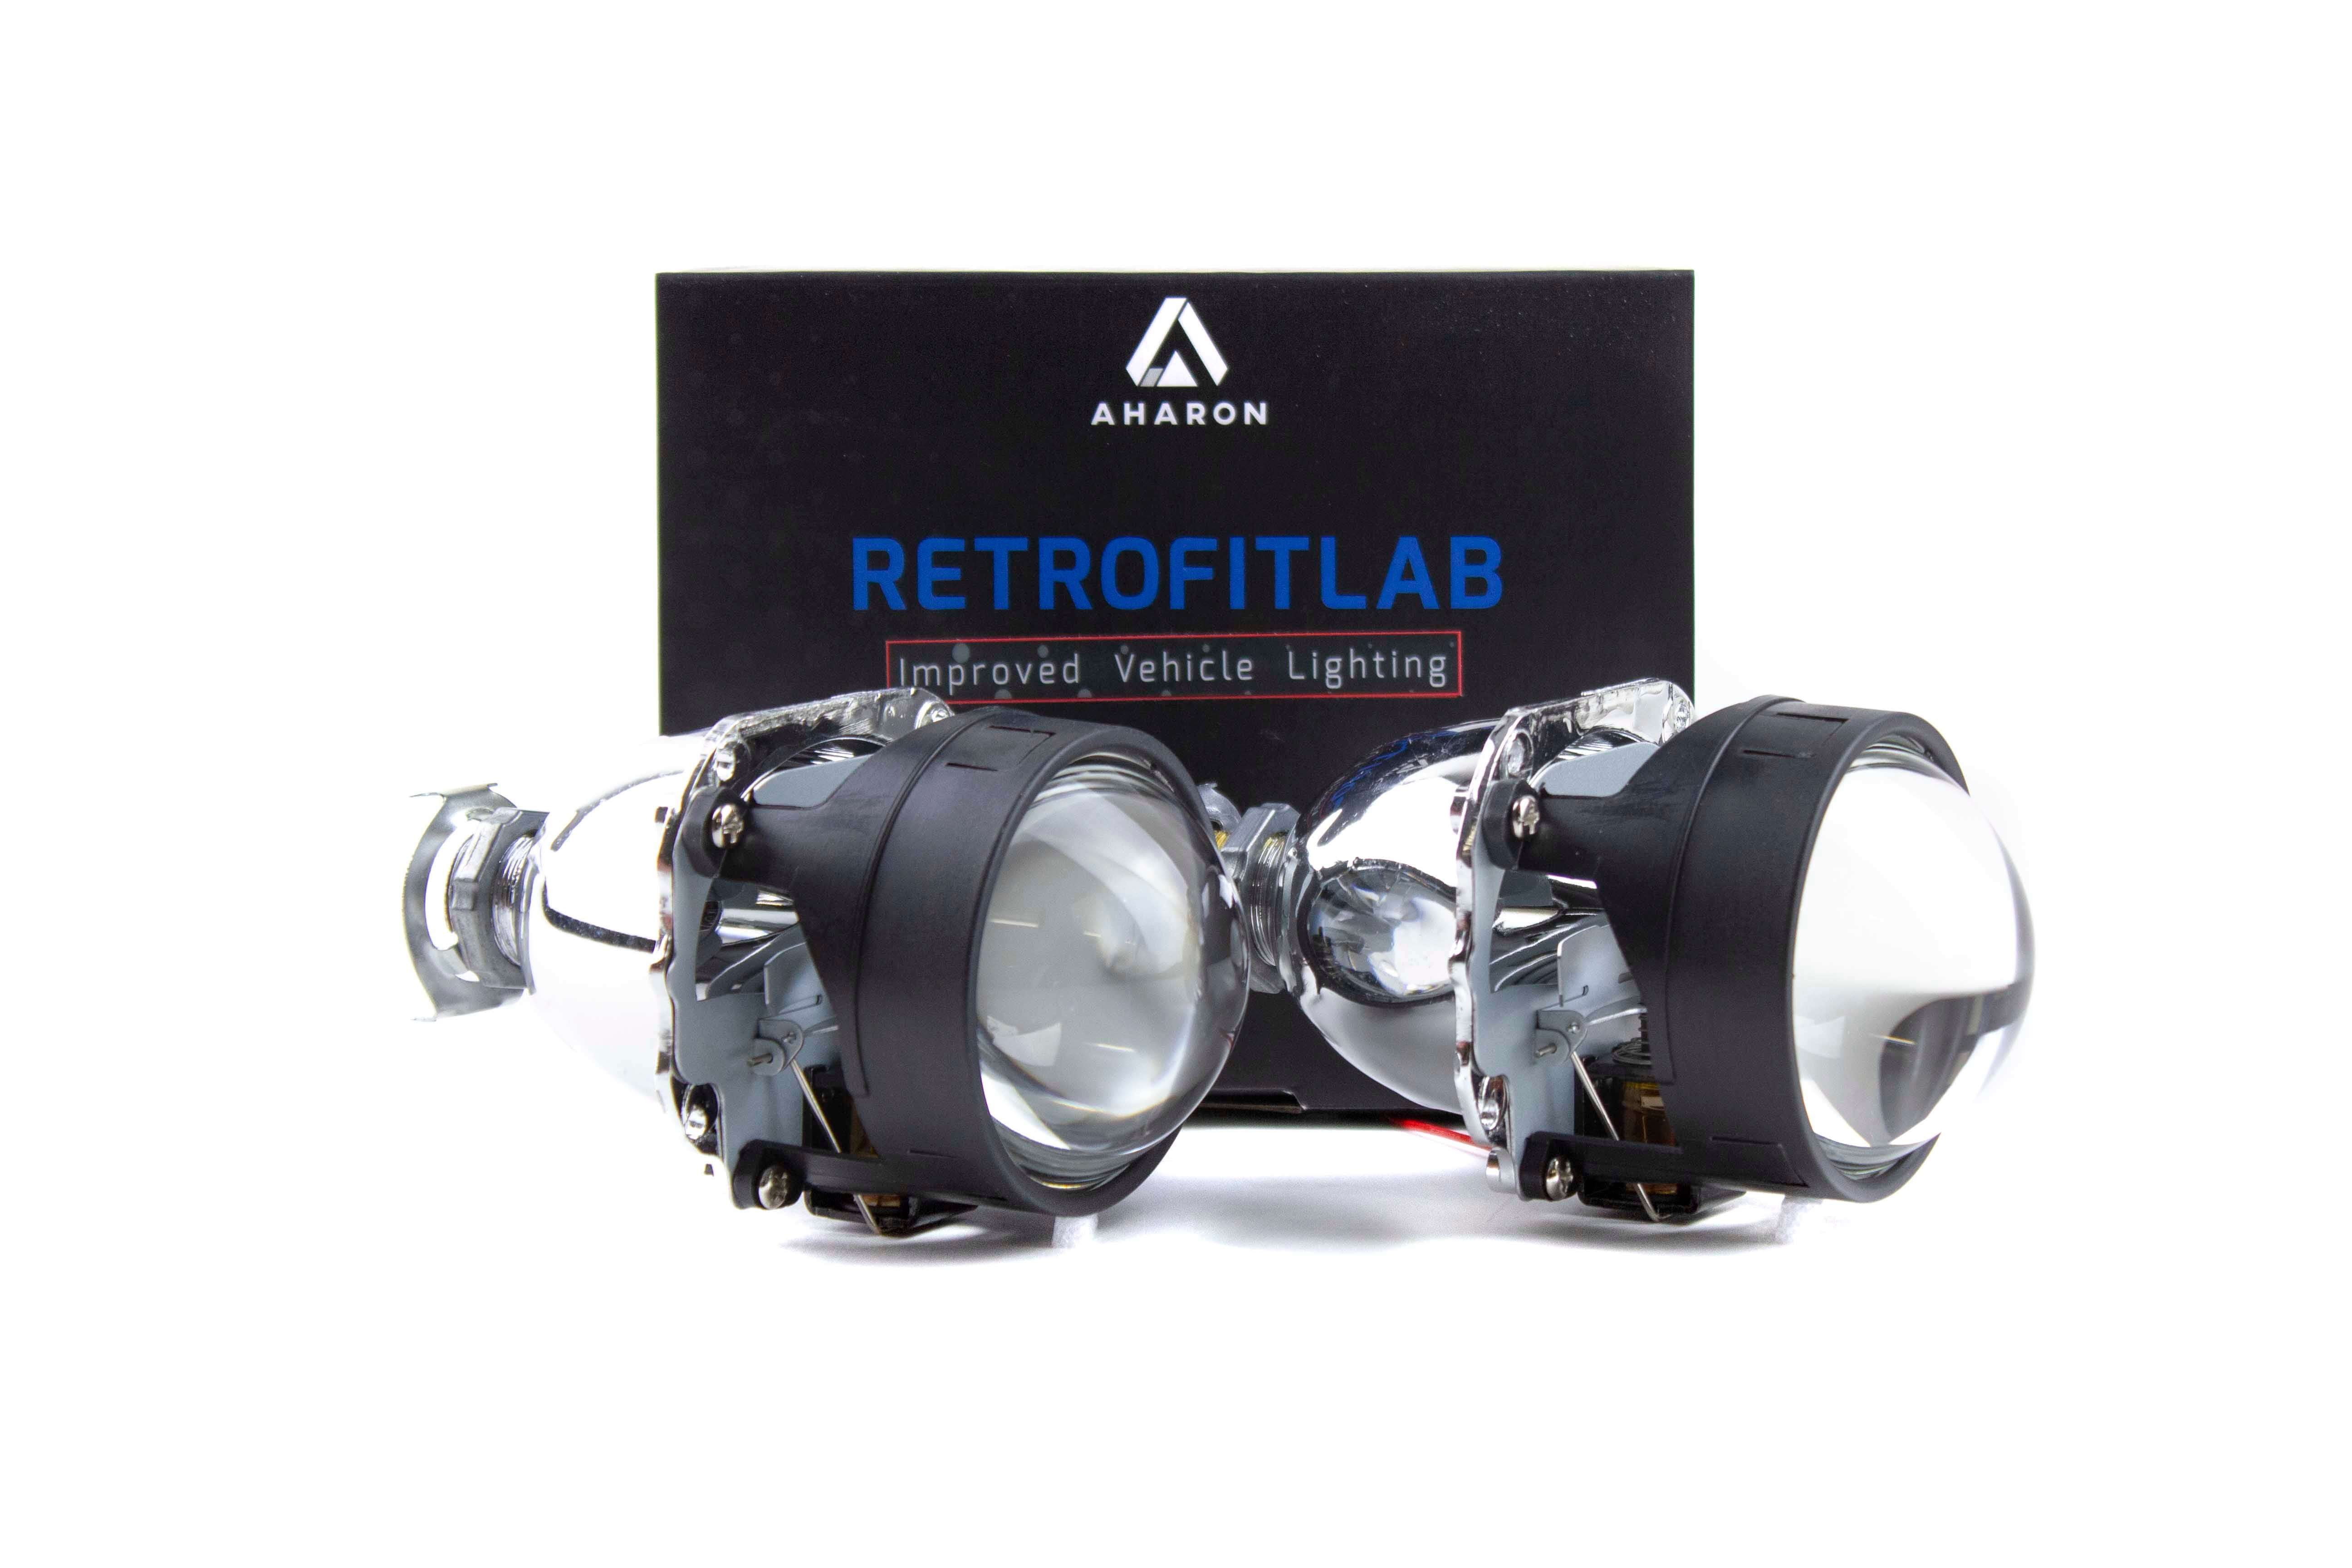 Aharon Mini H1 Ultimo - Bi-xenon projectors - Retrofitlab